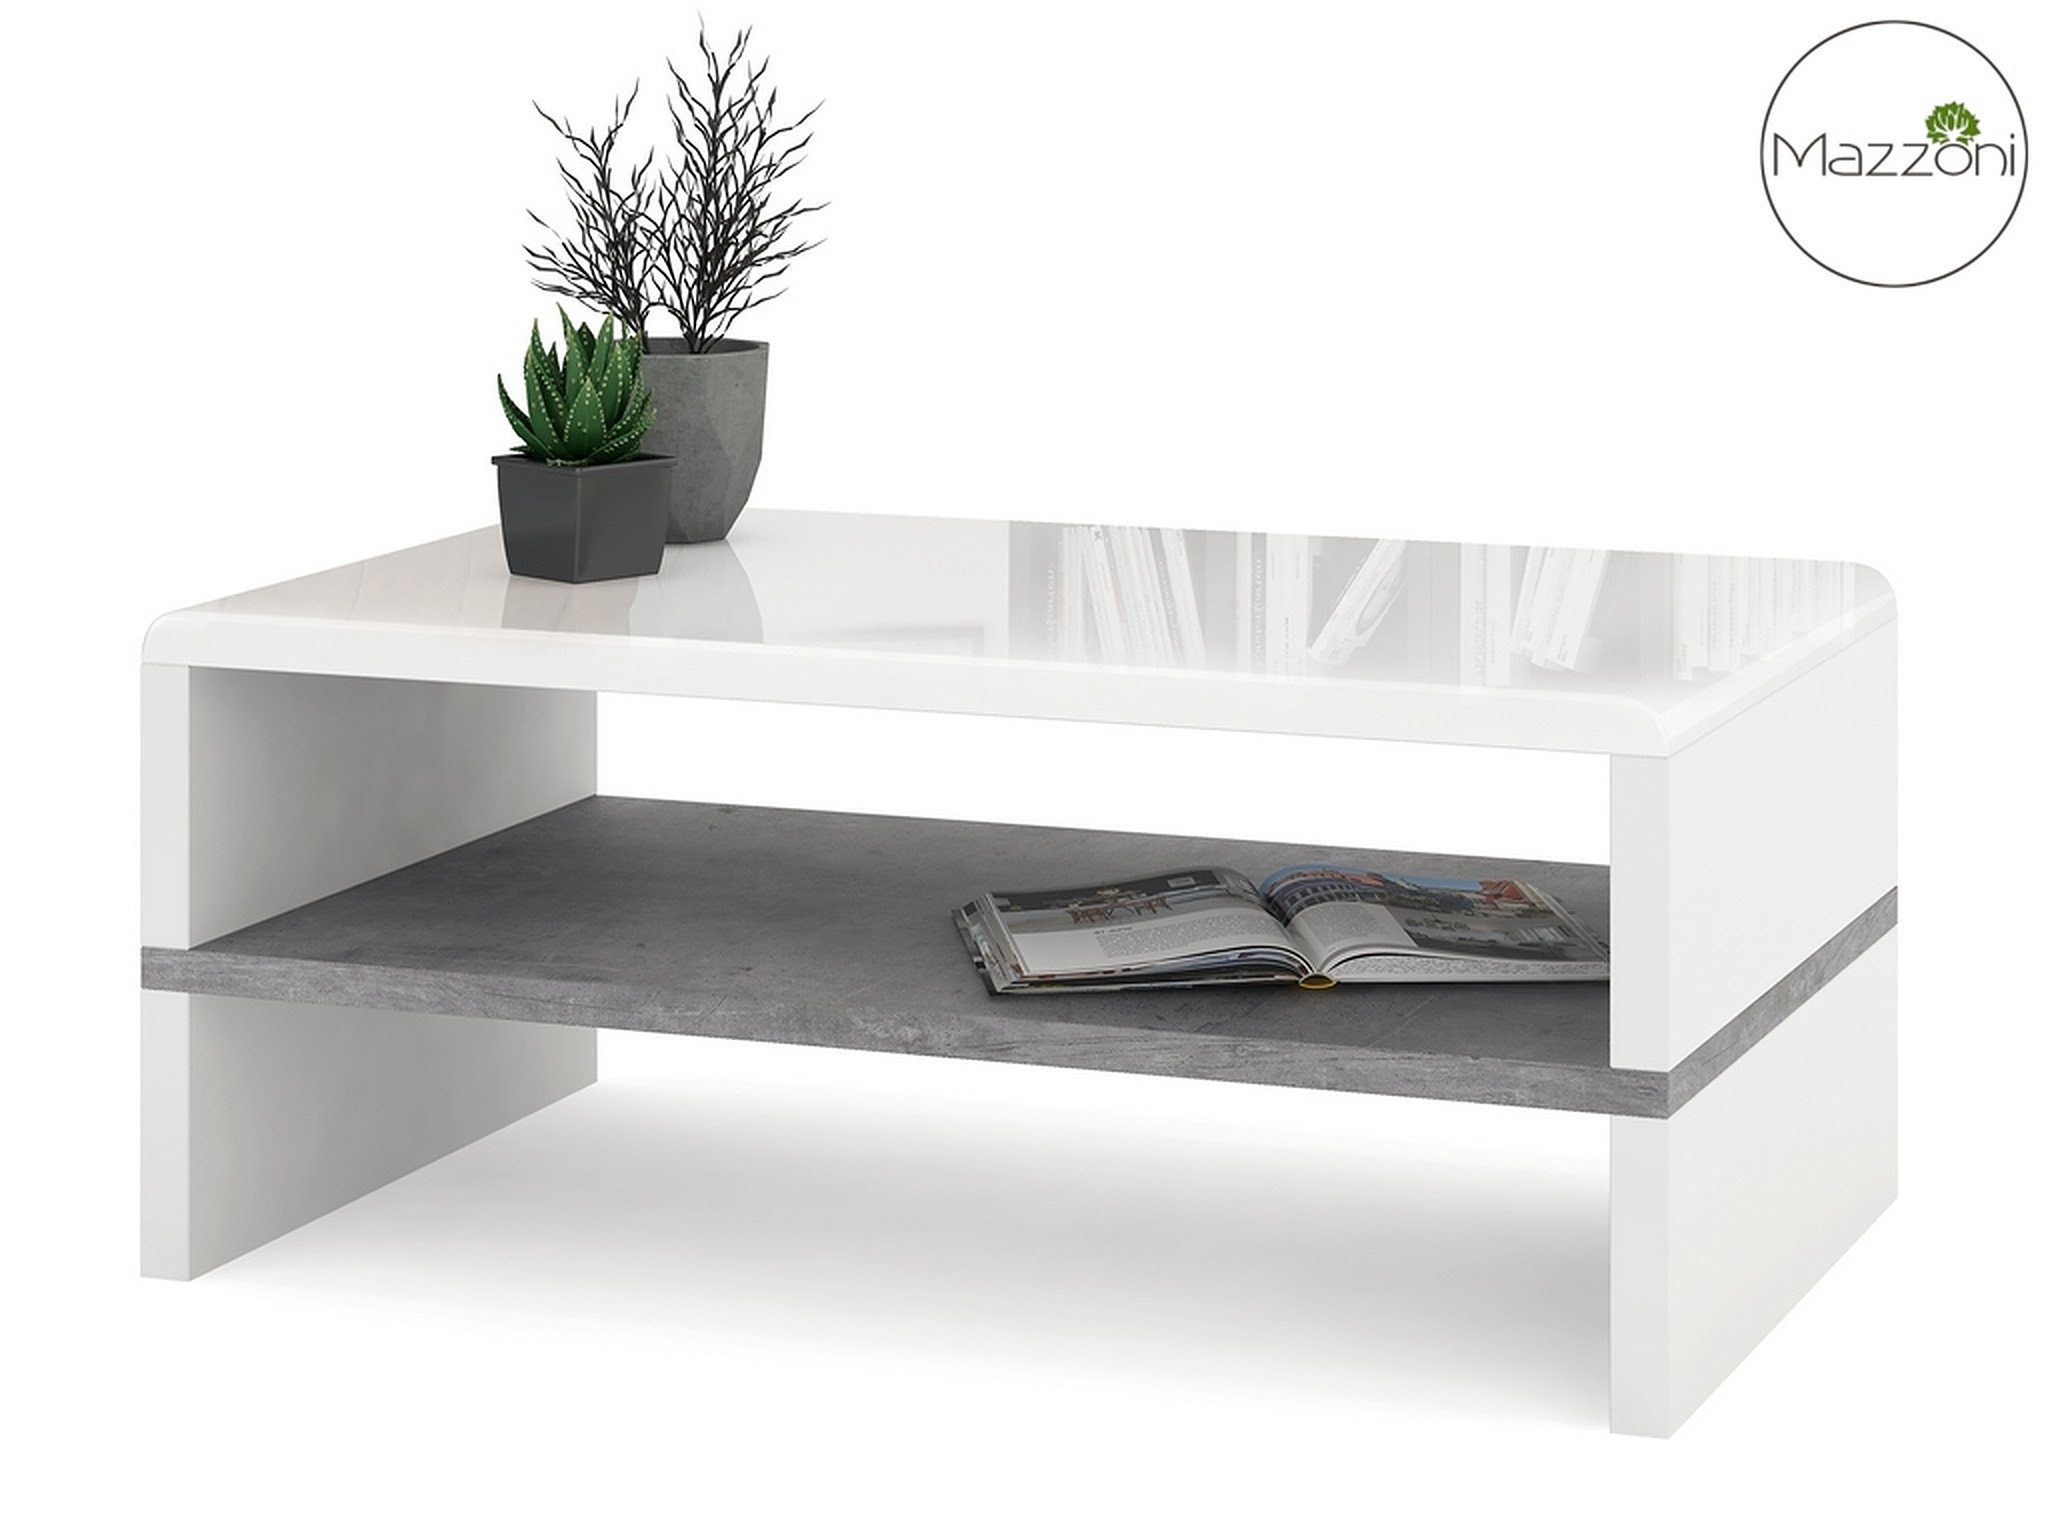 Hochglanz Tisch Rock Beton / Couchtisch Mazzoni 100x60x43cm Design Wohnzimmertisch Weiß